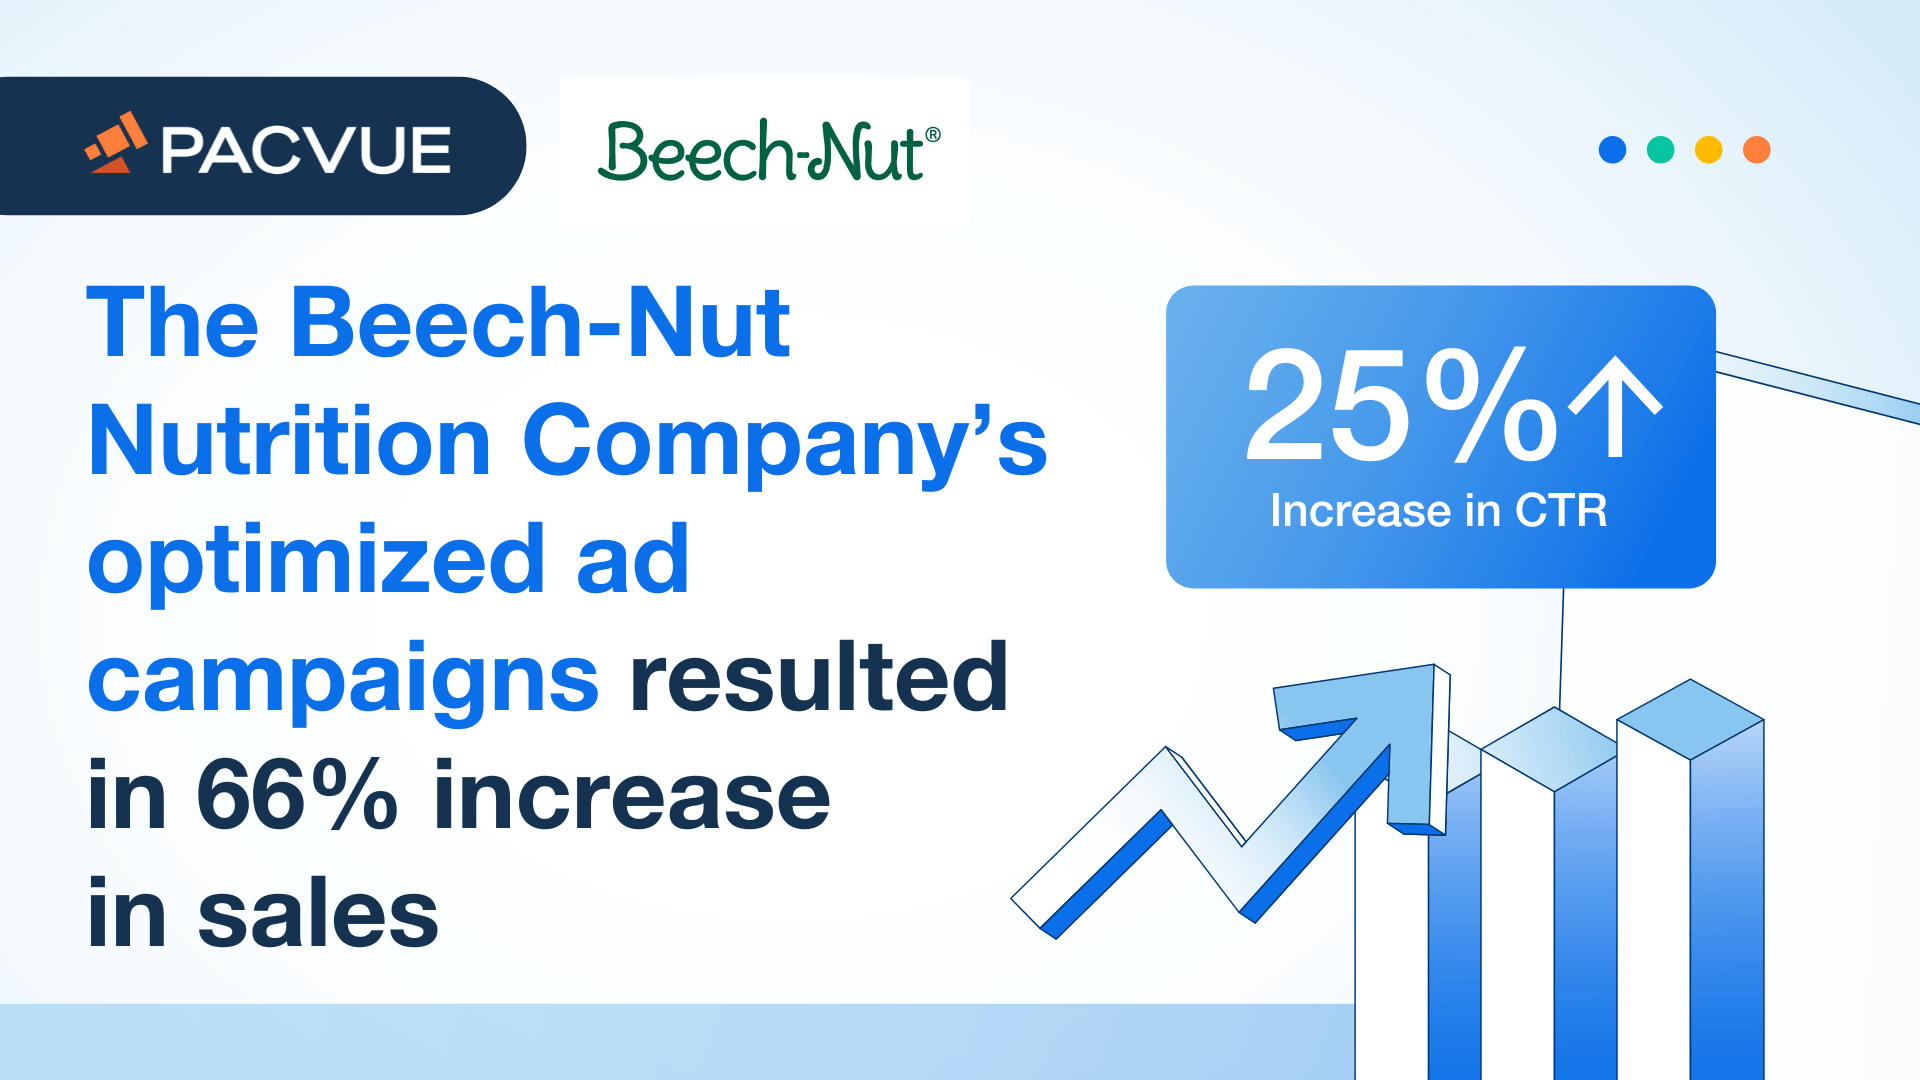 Die optimierten Werbekampagnen der Beech-Nut Nutrition Company führten zu einer Umsatzsteigerung von 66 %.